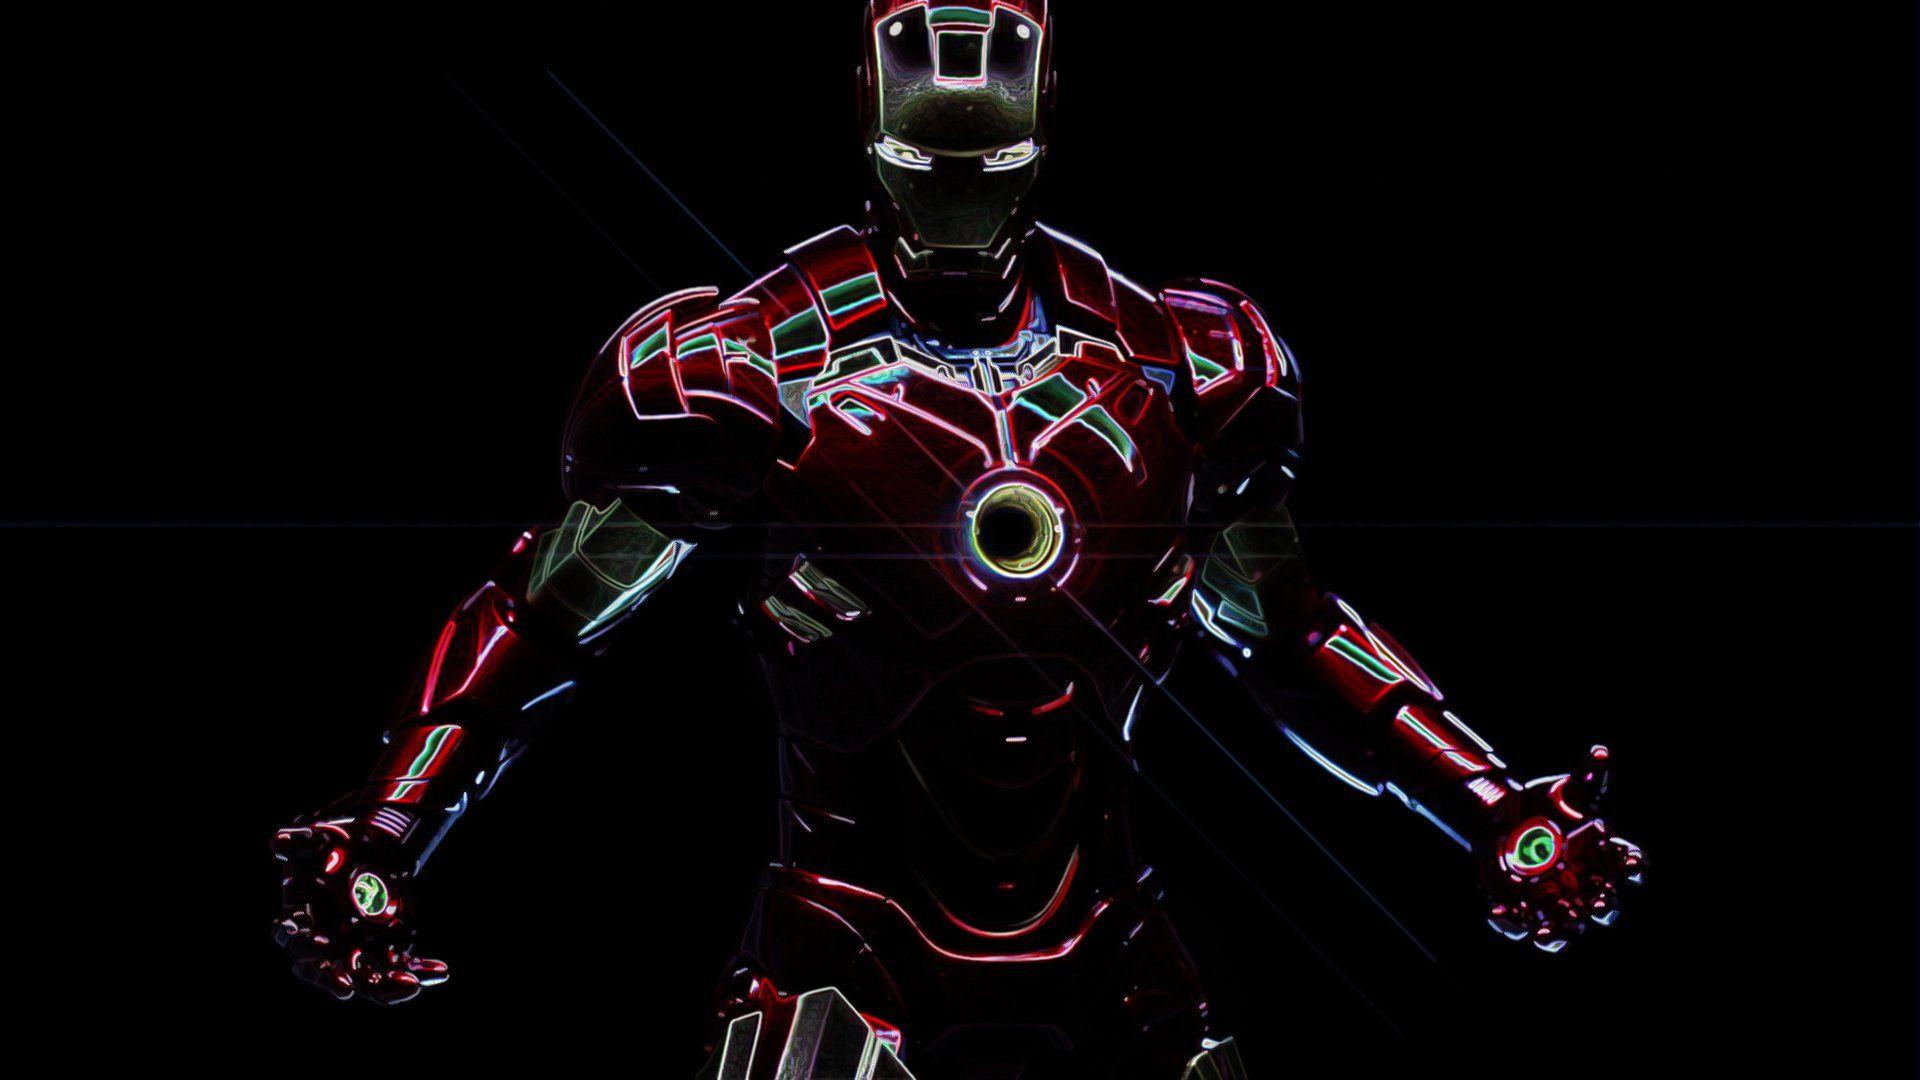 Cool Iron Man pic.jpg